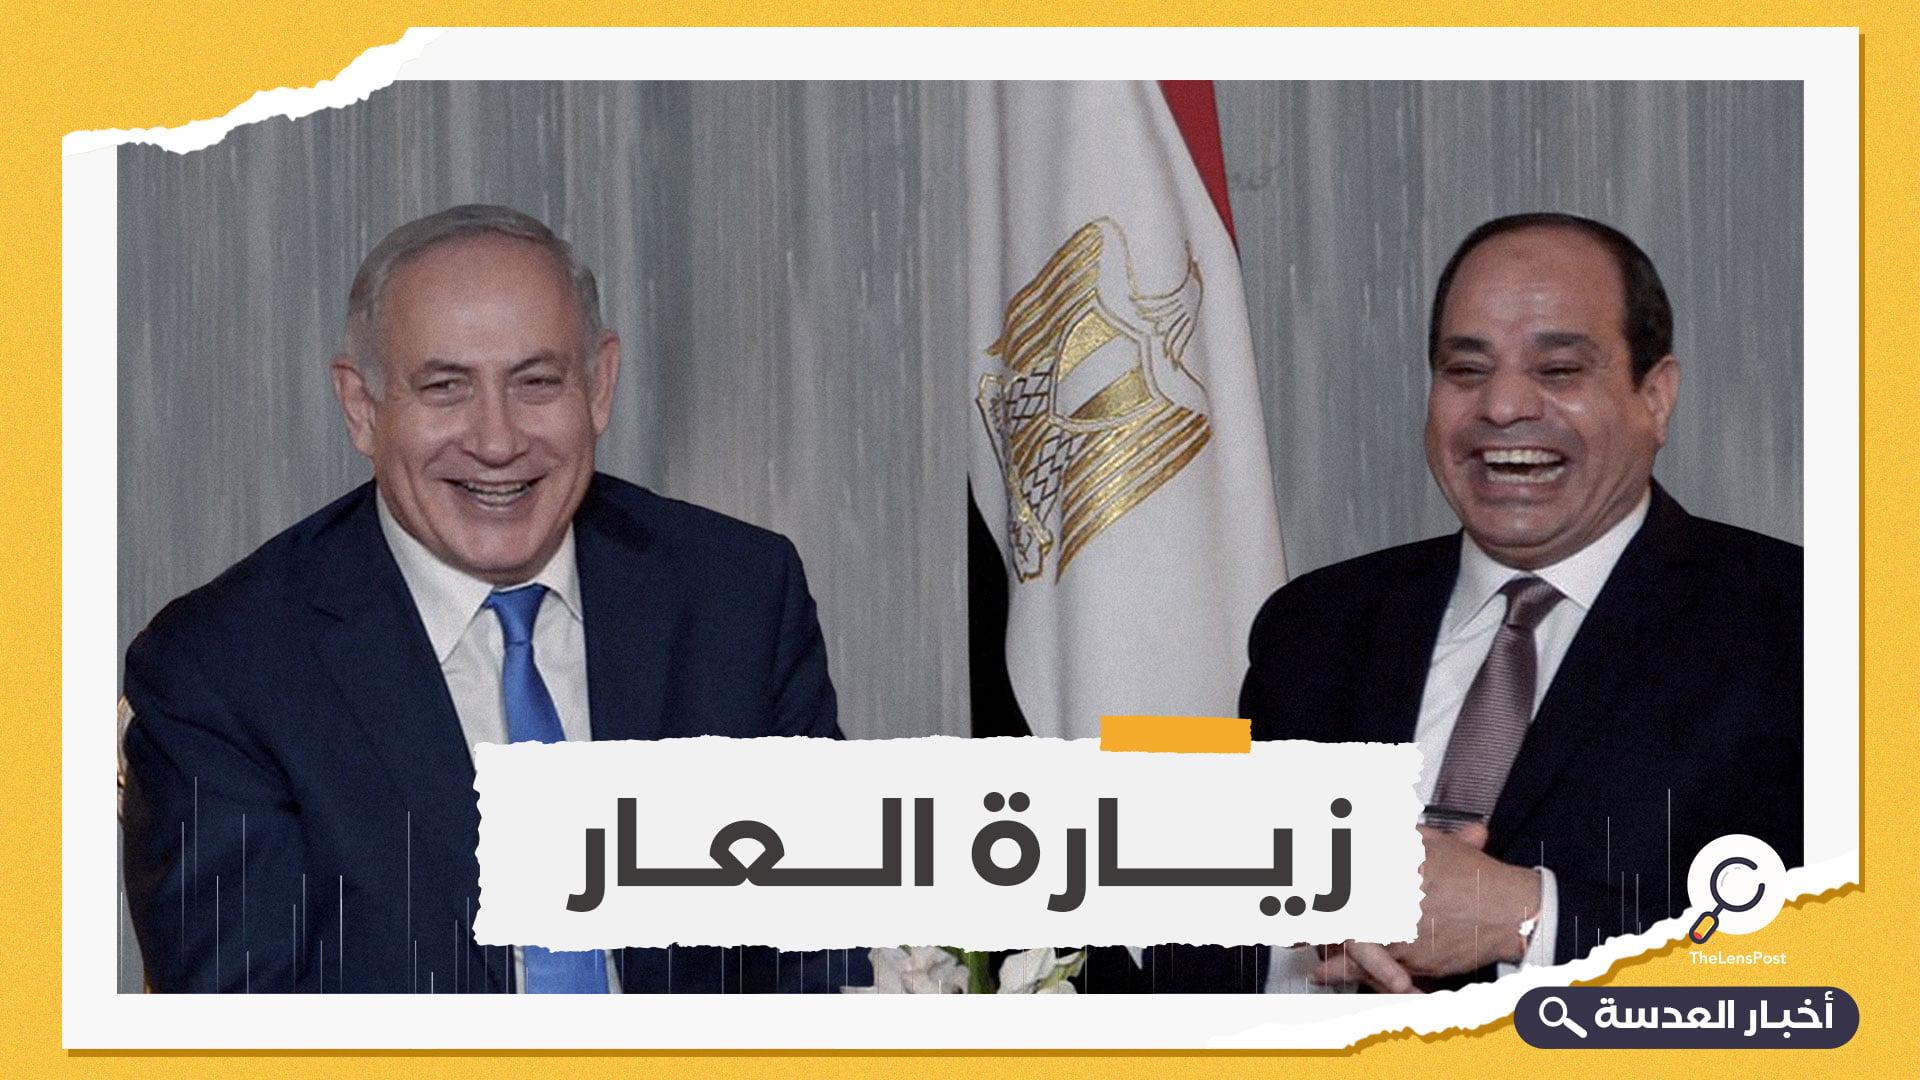 سفير إسرائيلي سابق يتنبأ بلقاء منعش بين نتنياهو والسيسي في مصر